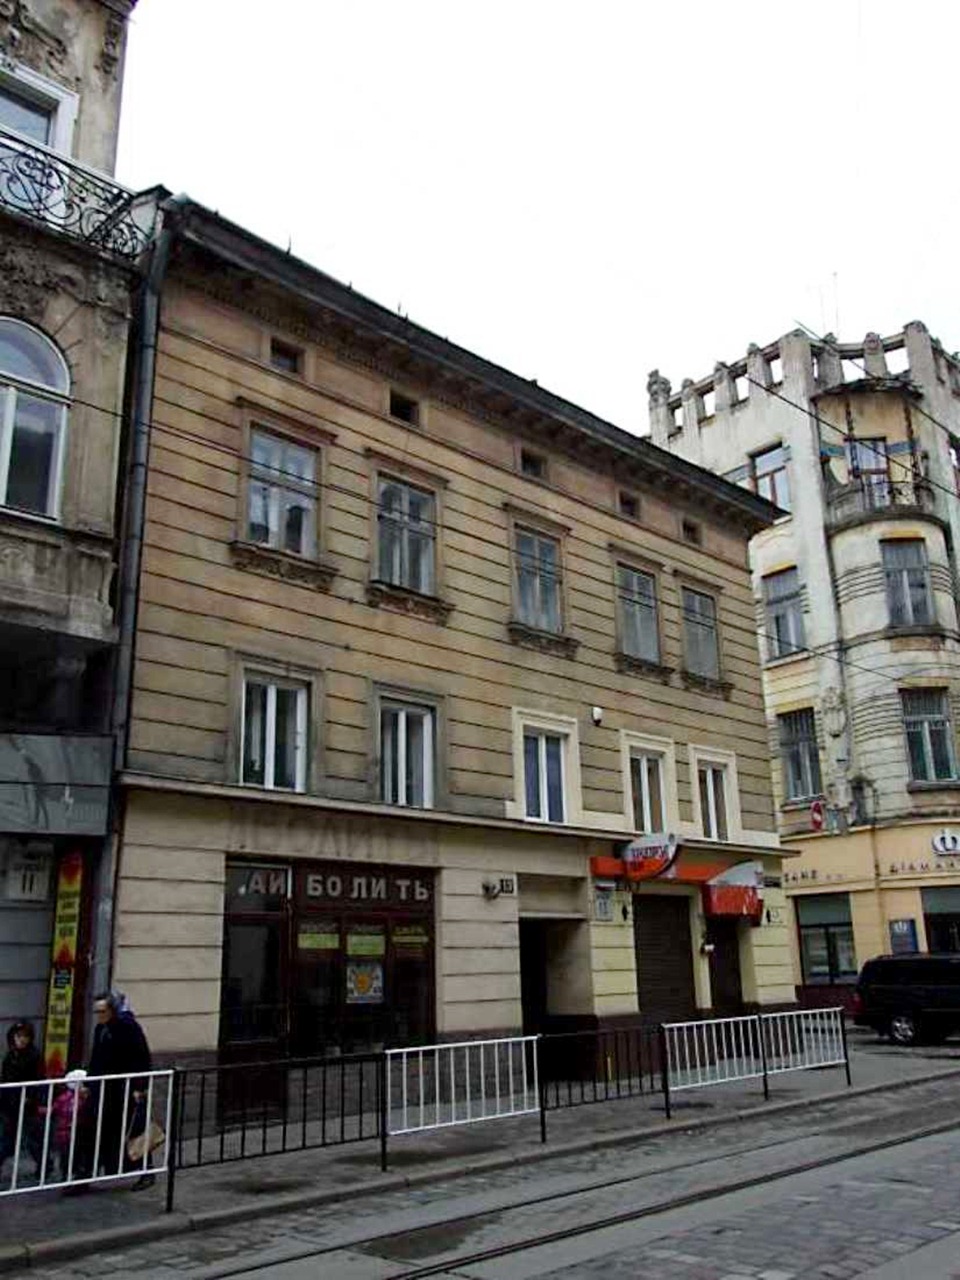 Будинок на вулиці Дорошенка №13. Тут проживав архітектор Генрик Сальвер